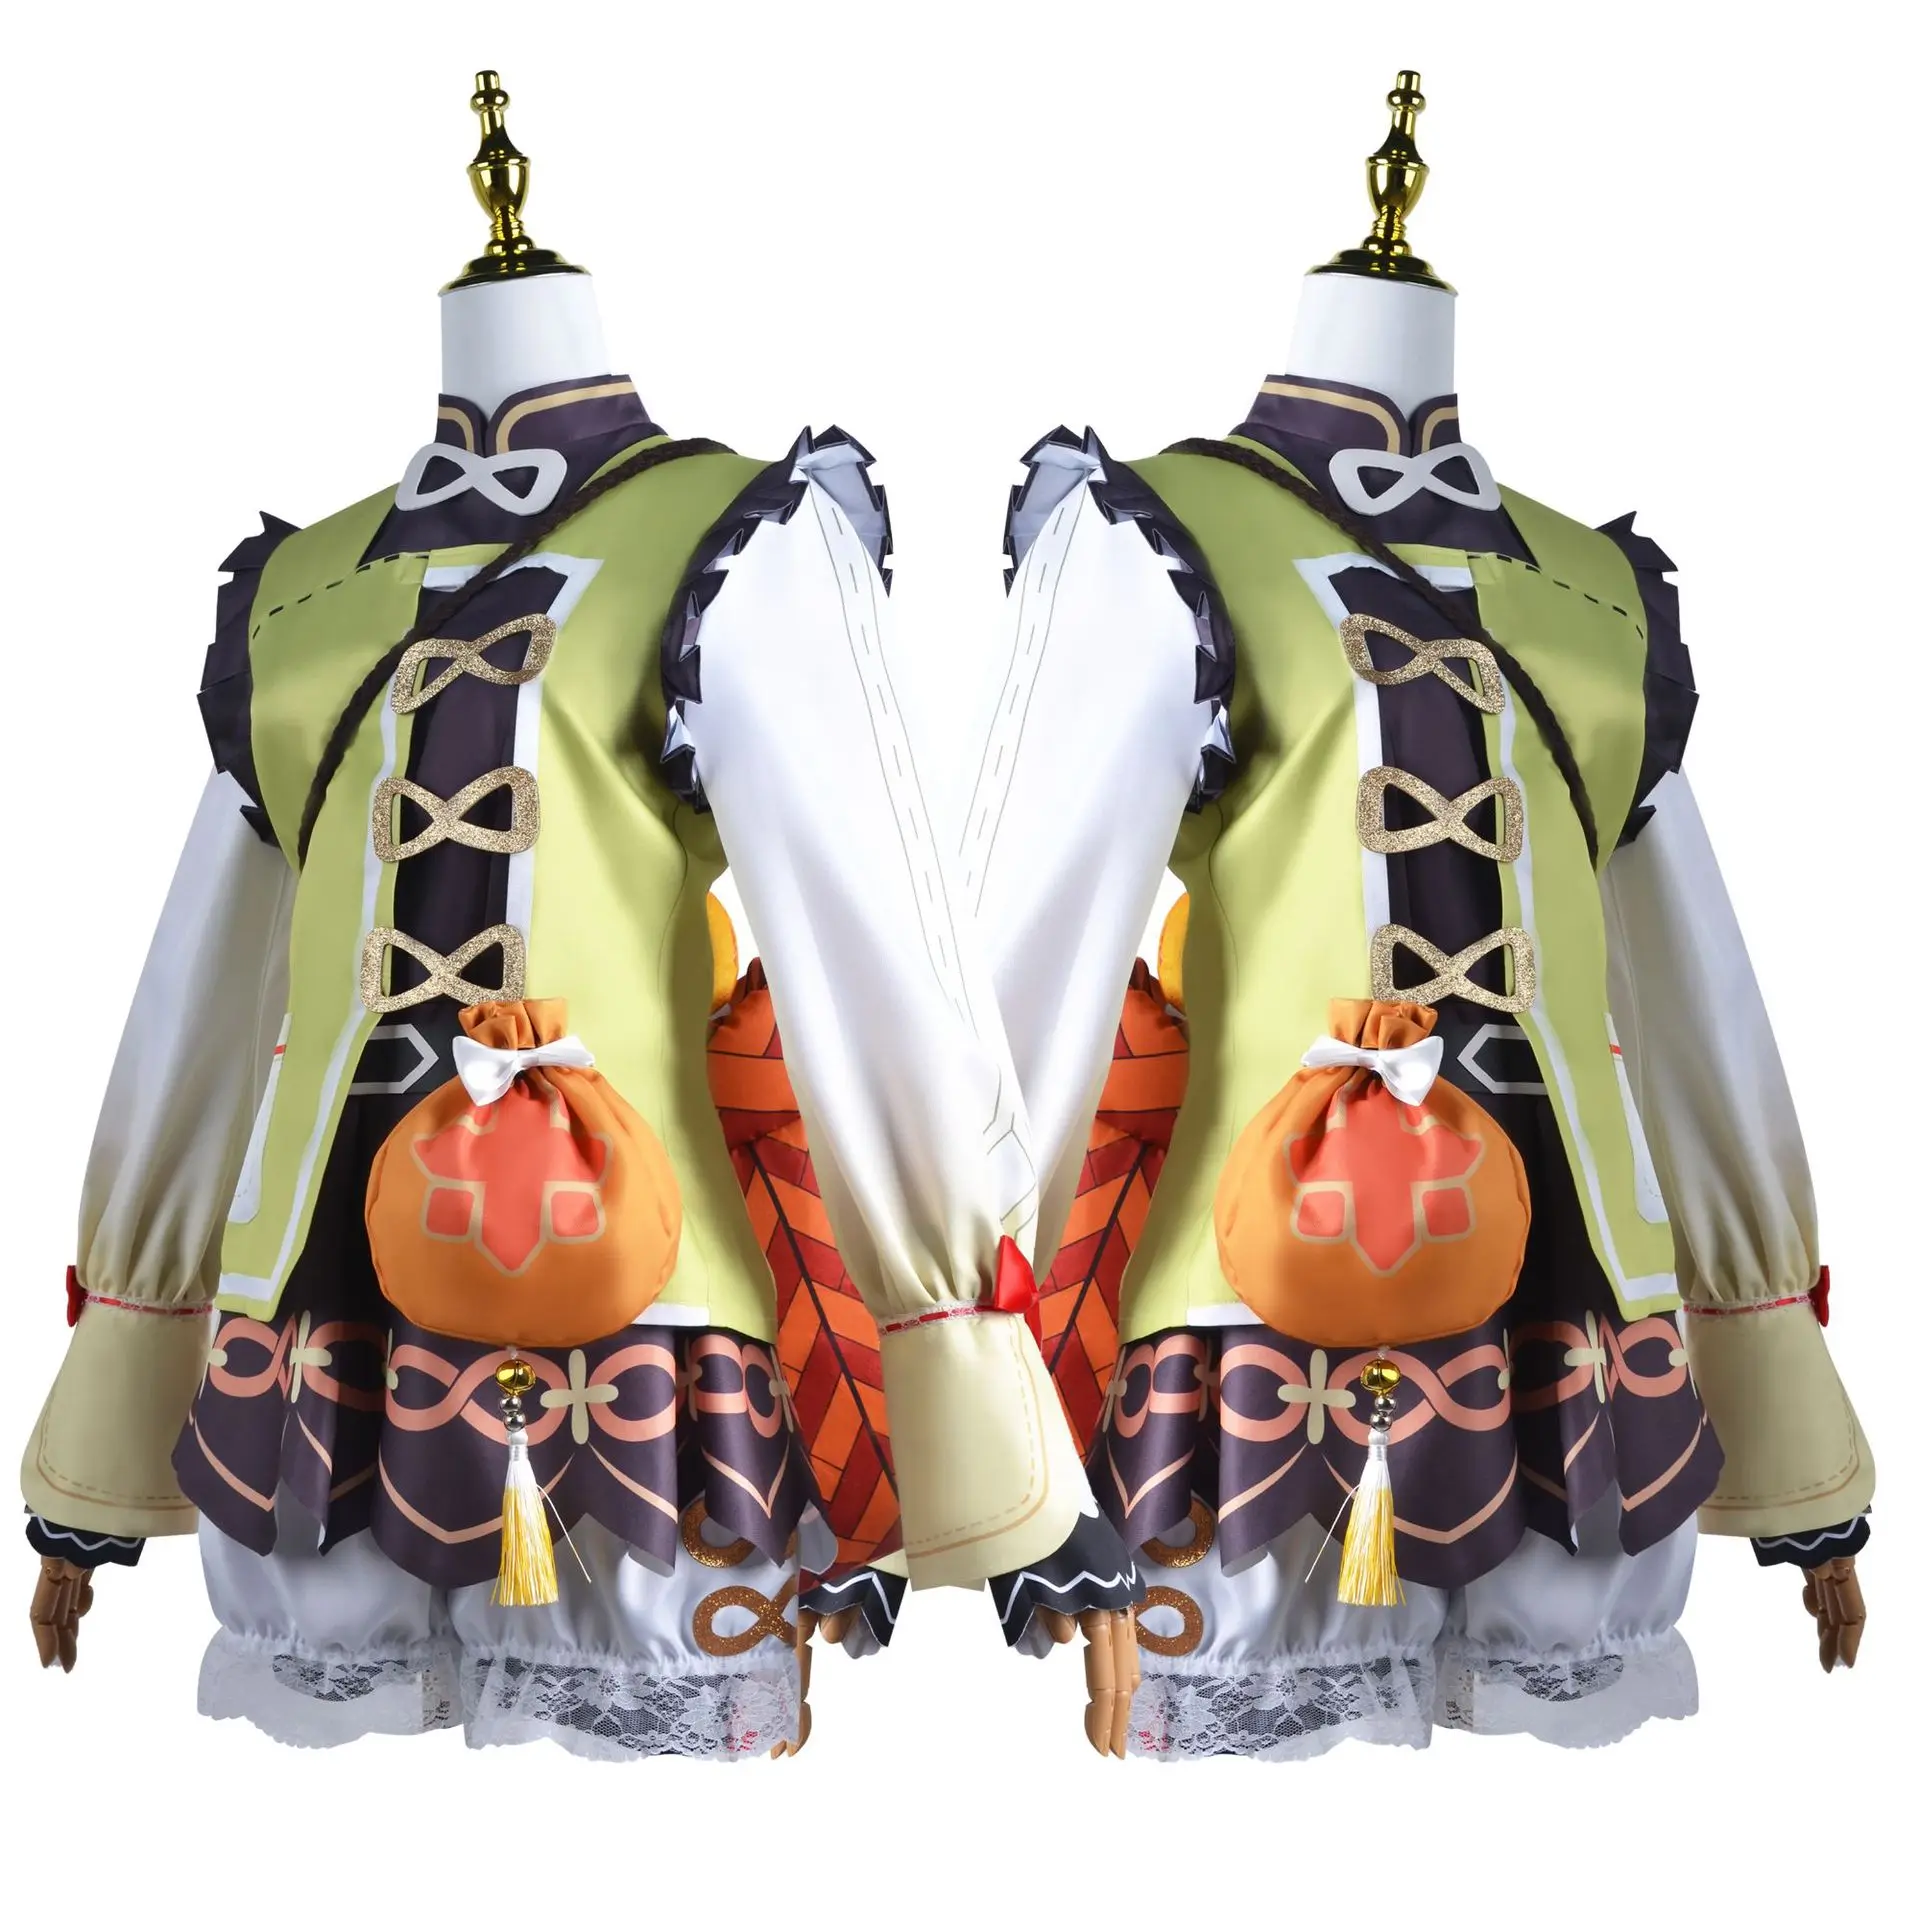 Brdwn Genshin Impact Женский Костюм для Косплея Yaoyao, Платье в стиле Лолиты, Прекрасная Униформа, наряд для Вечеринки на Хэллоуин - 2